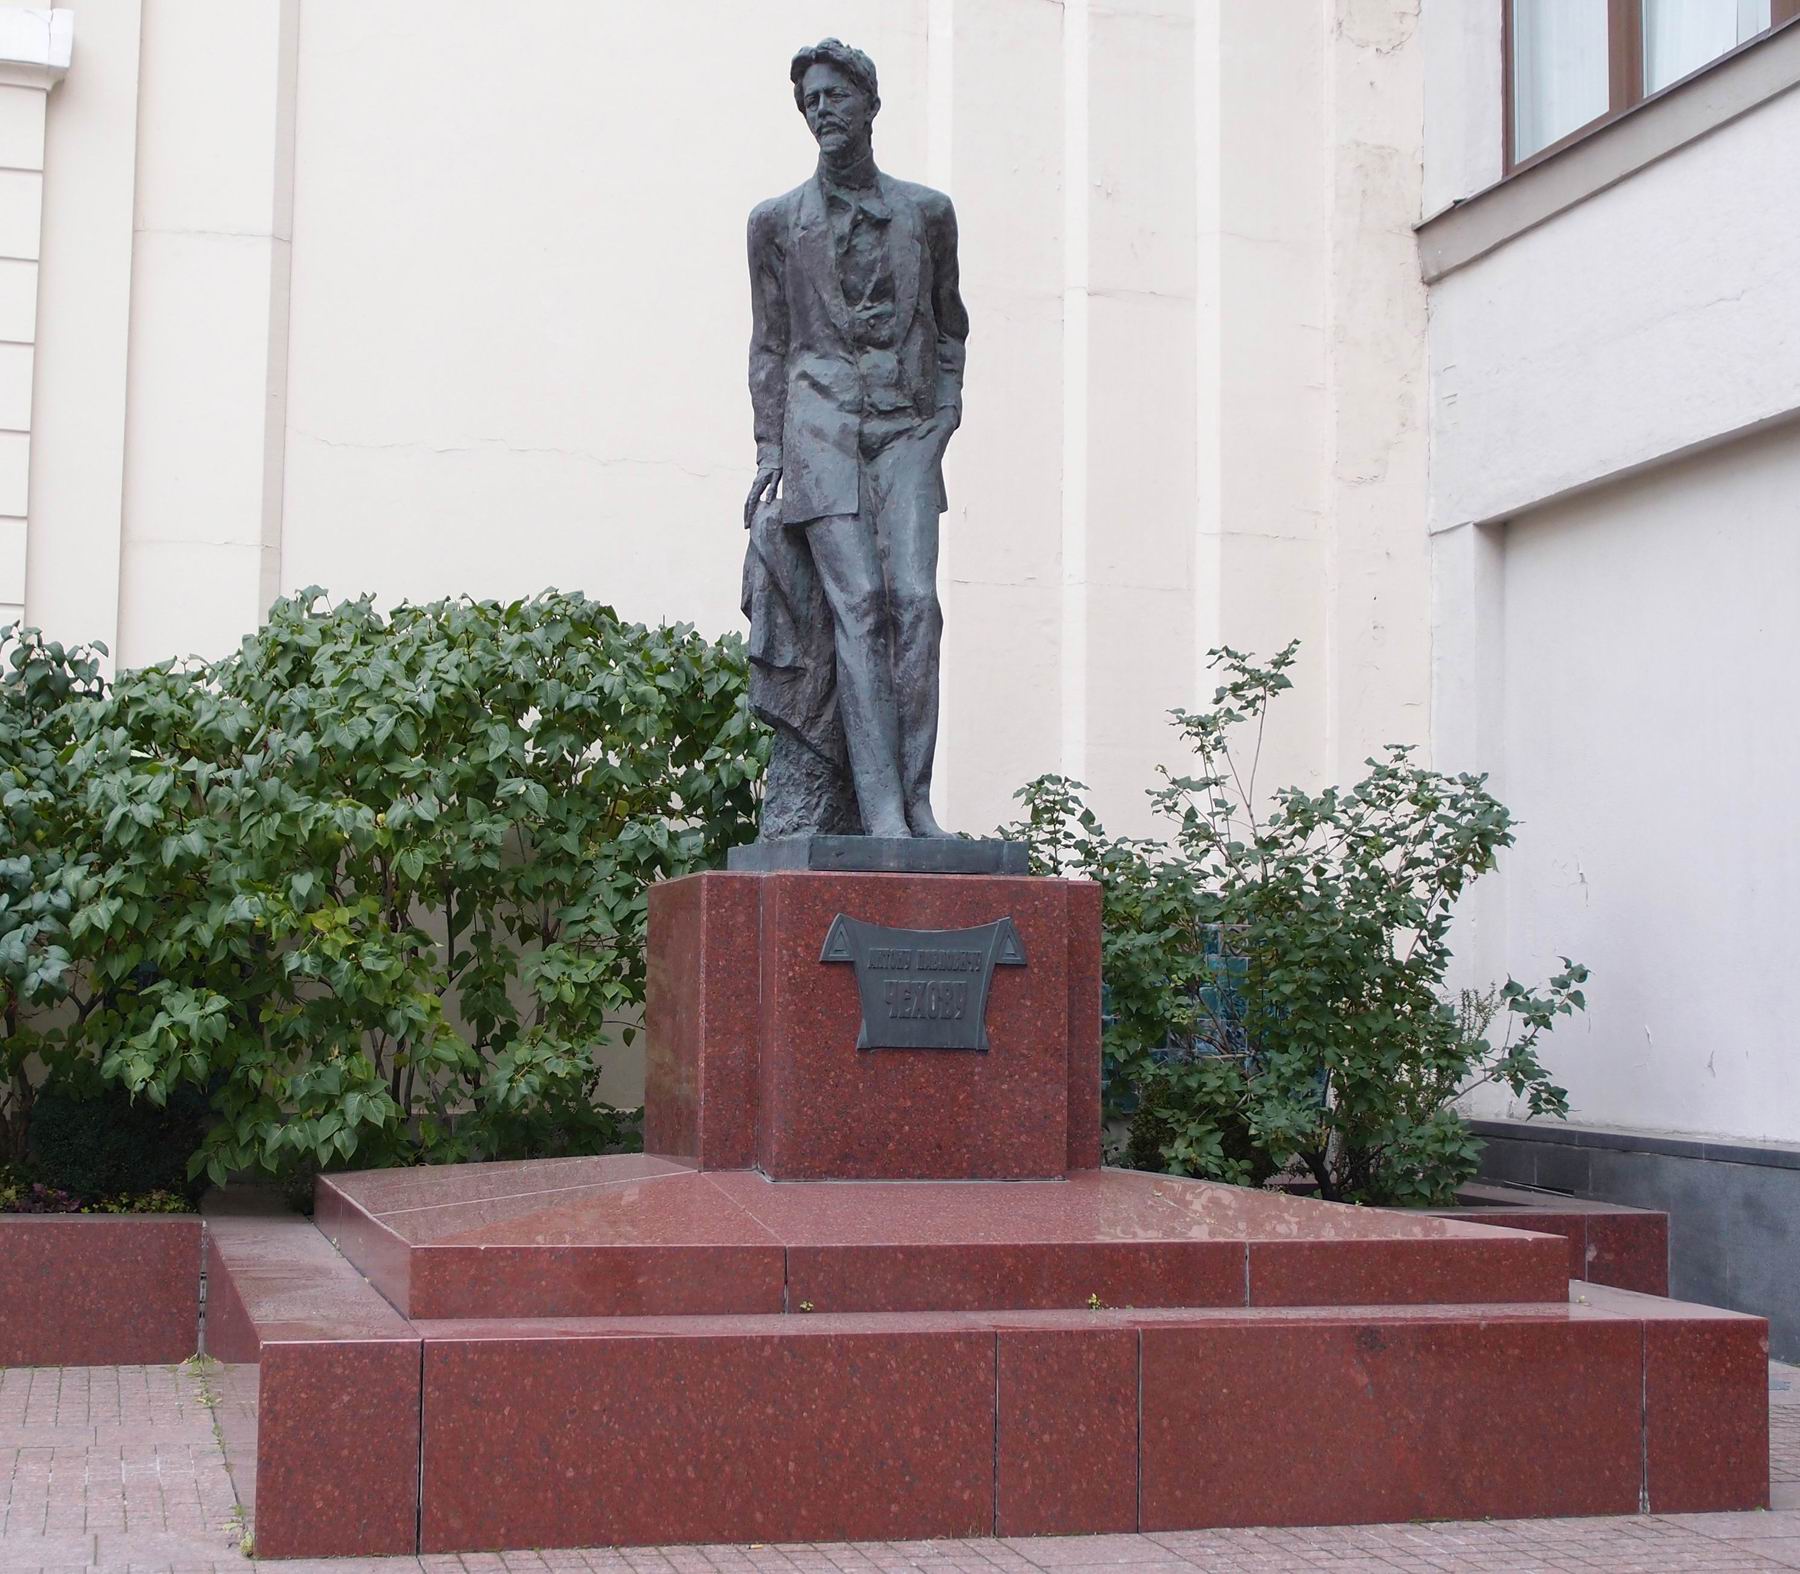 Памятник Чехову А.П. (1860–1904), ск. М.К.Аникушин, арх. М.М.Посохин и М.Л.Фельдман, в Камергерском переулке, открыт в 1998.